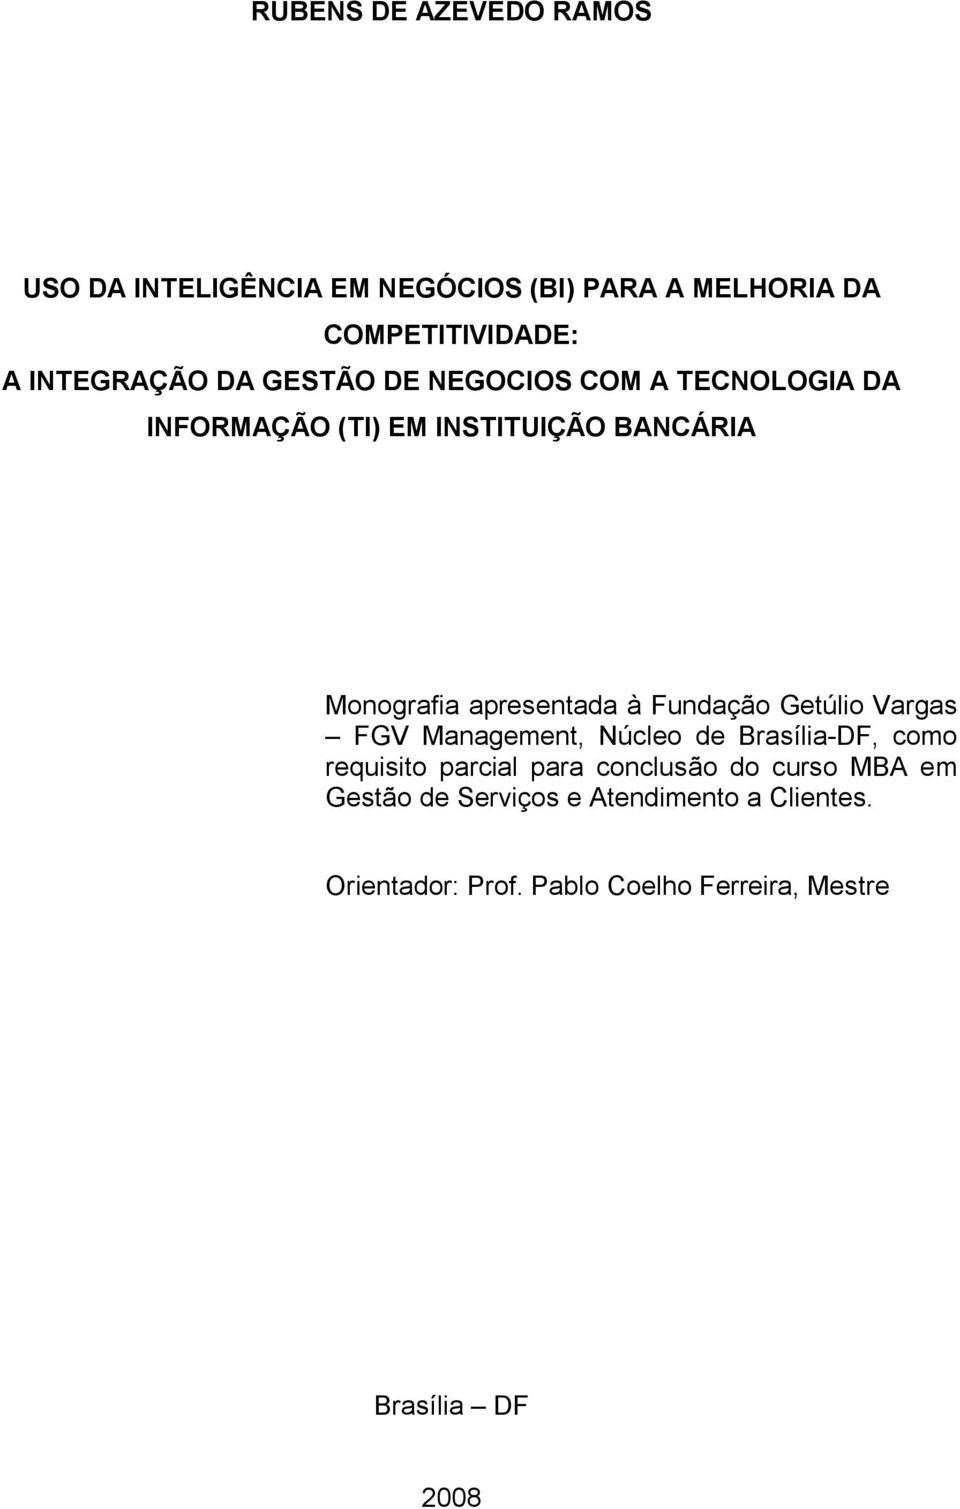 Fundação Getúlio Vargas FGV Management, Núcleo de Brasília-DF, como requisito parcial para conclusão do curso